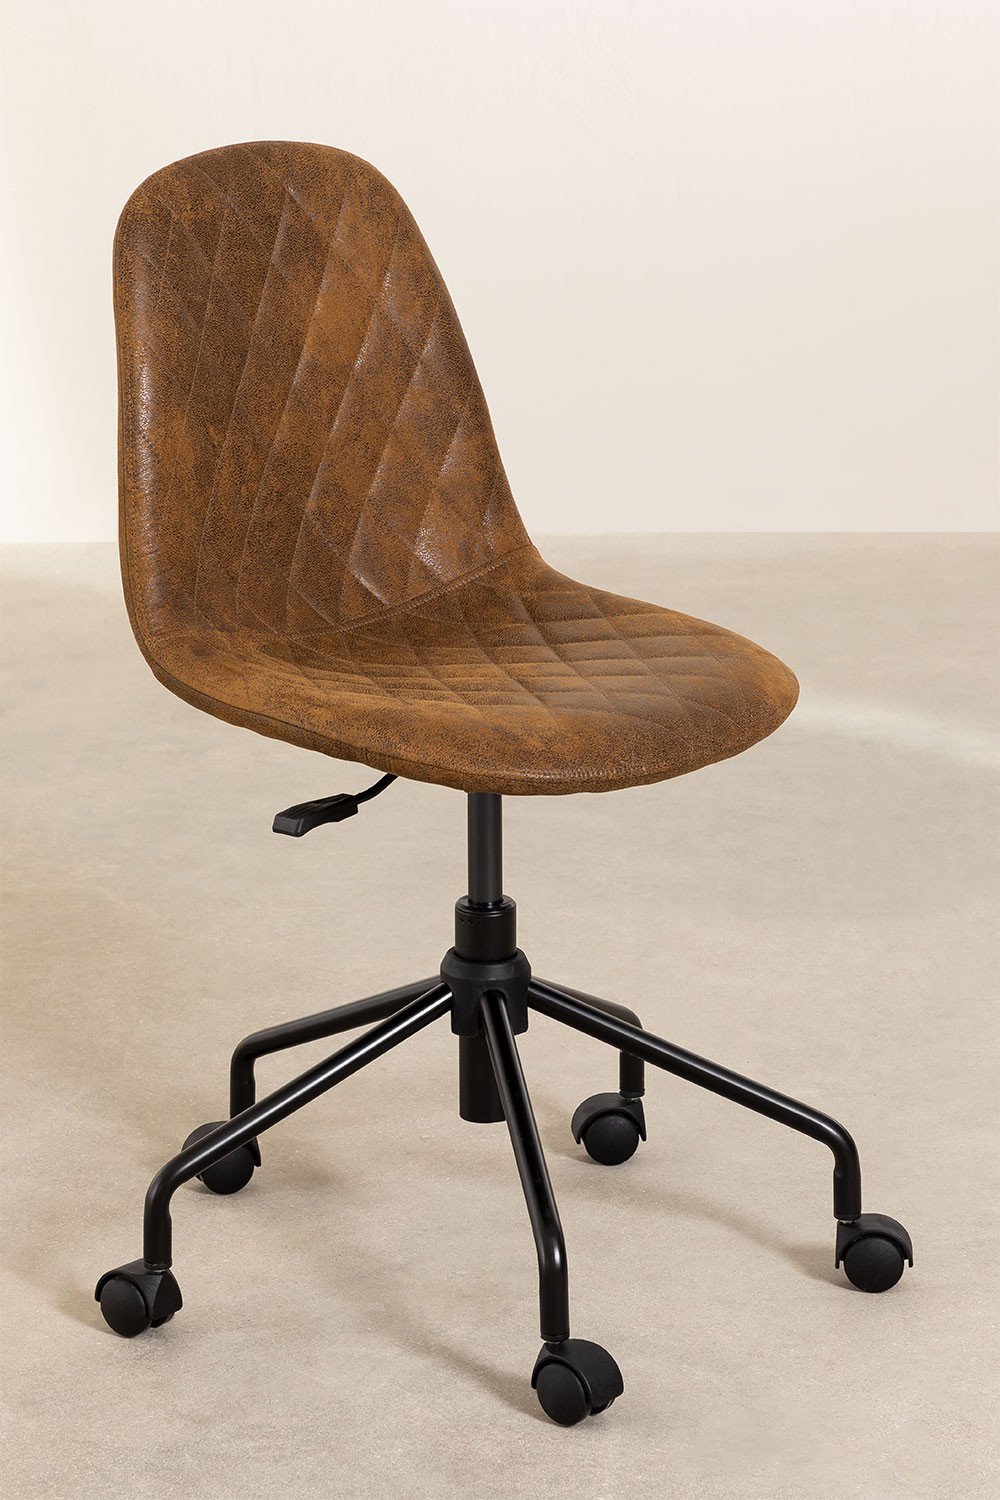 Krzeslo Biurowe ze Sztucznej Skóry Glamm Diamond, obrazek w galerii 1